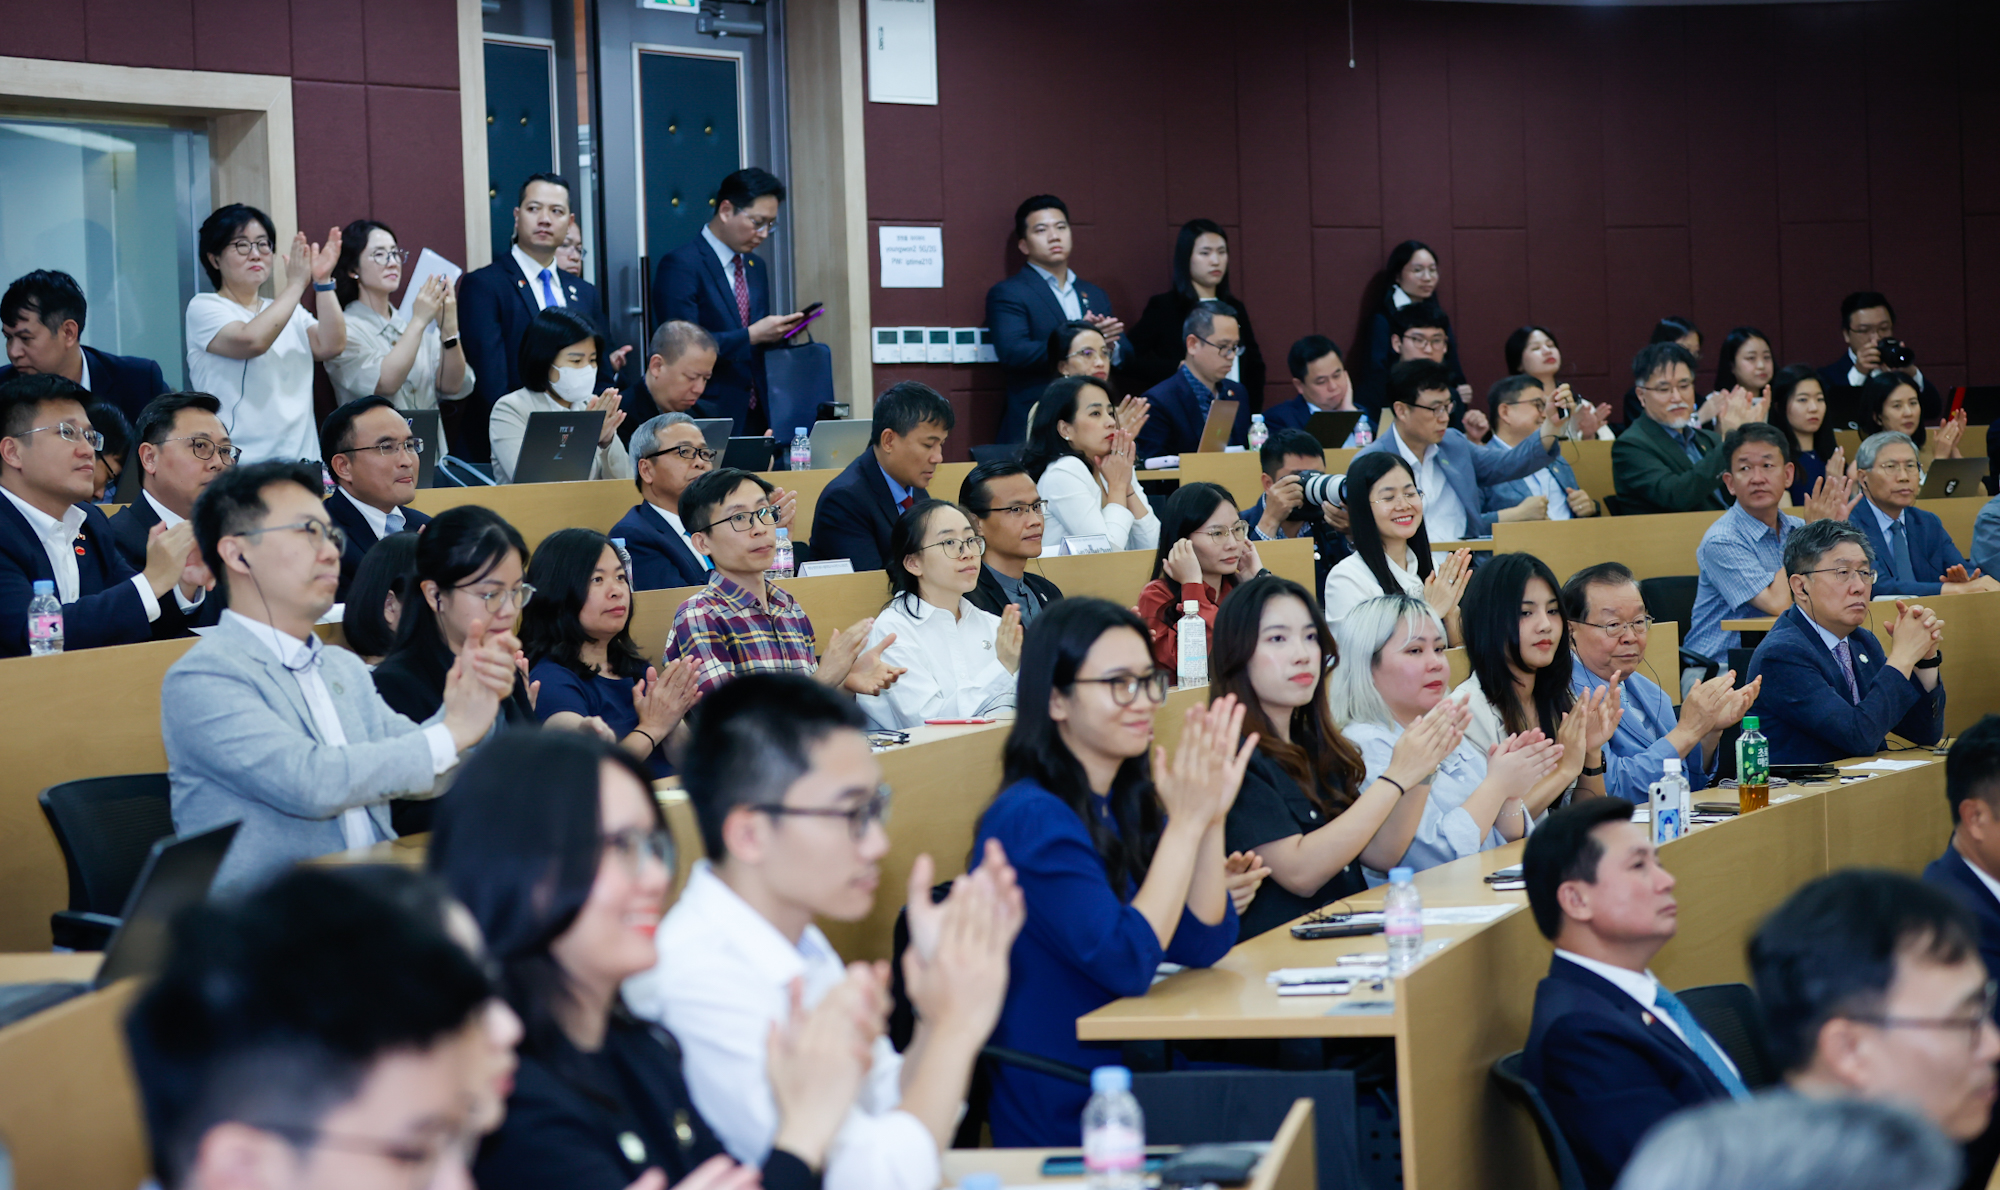 Tham dự sự kiện có các thành viên đoàn đại biểu Việt Nam, các giáo sư, nghiên cứu sinh và sinh viên - Ảnh: VGP/Nhật Bắc